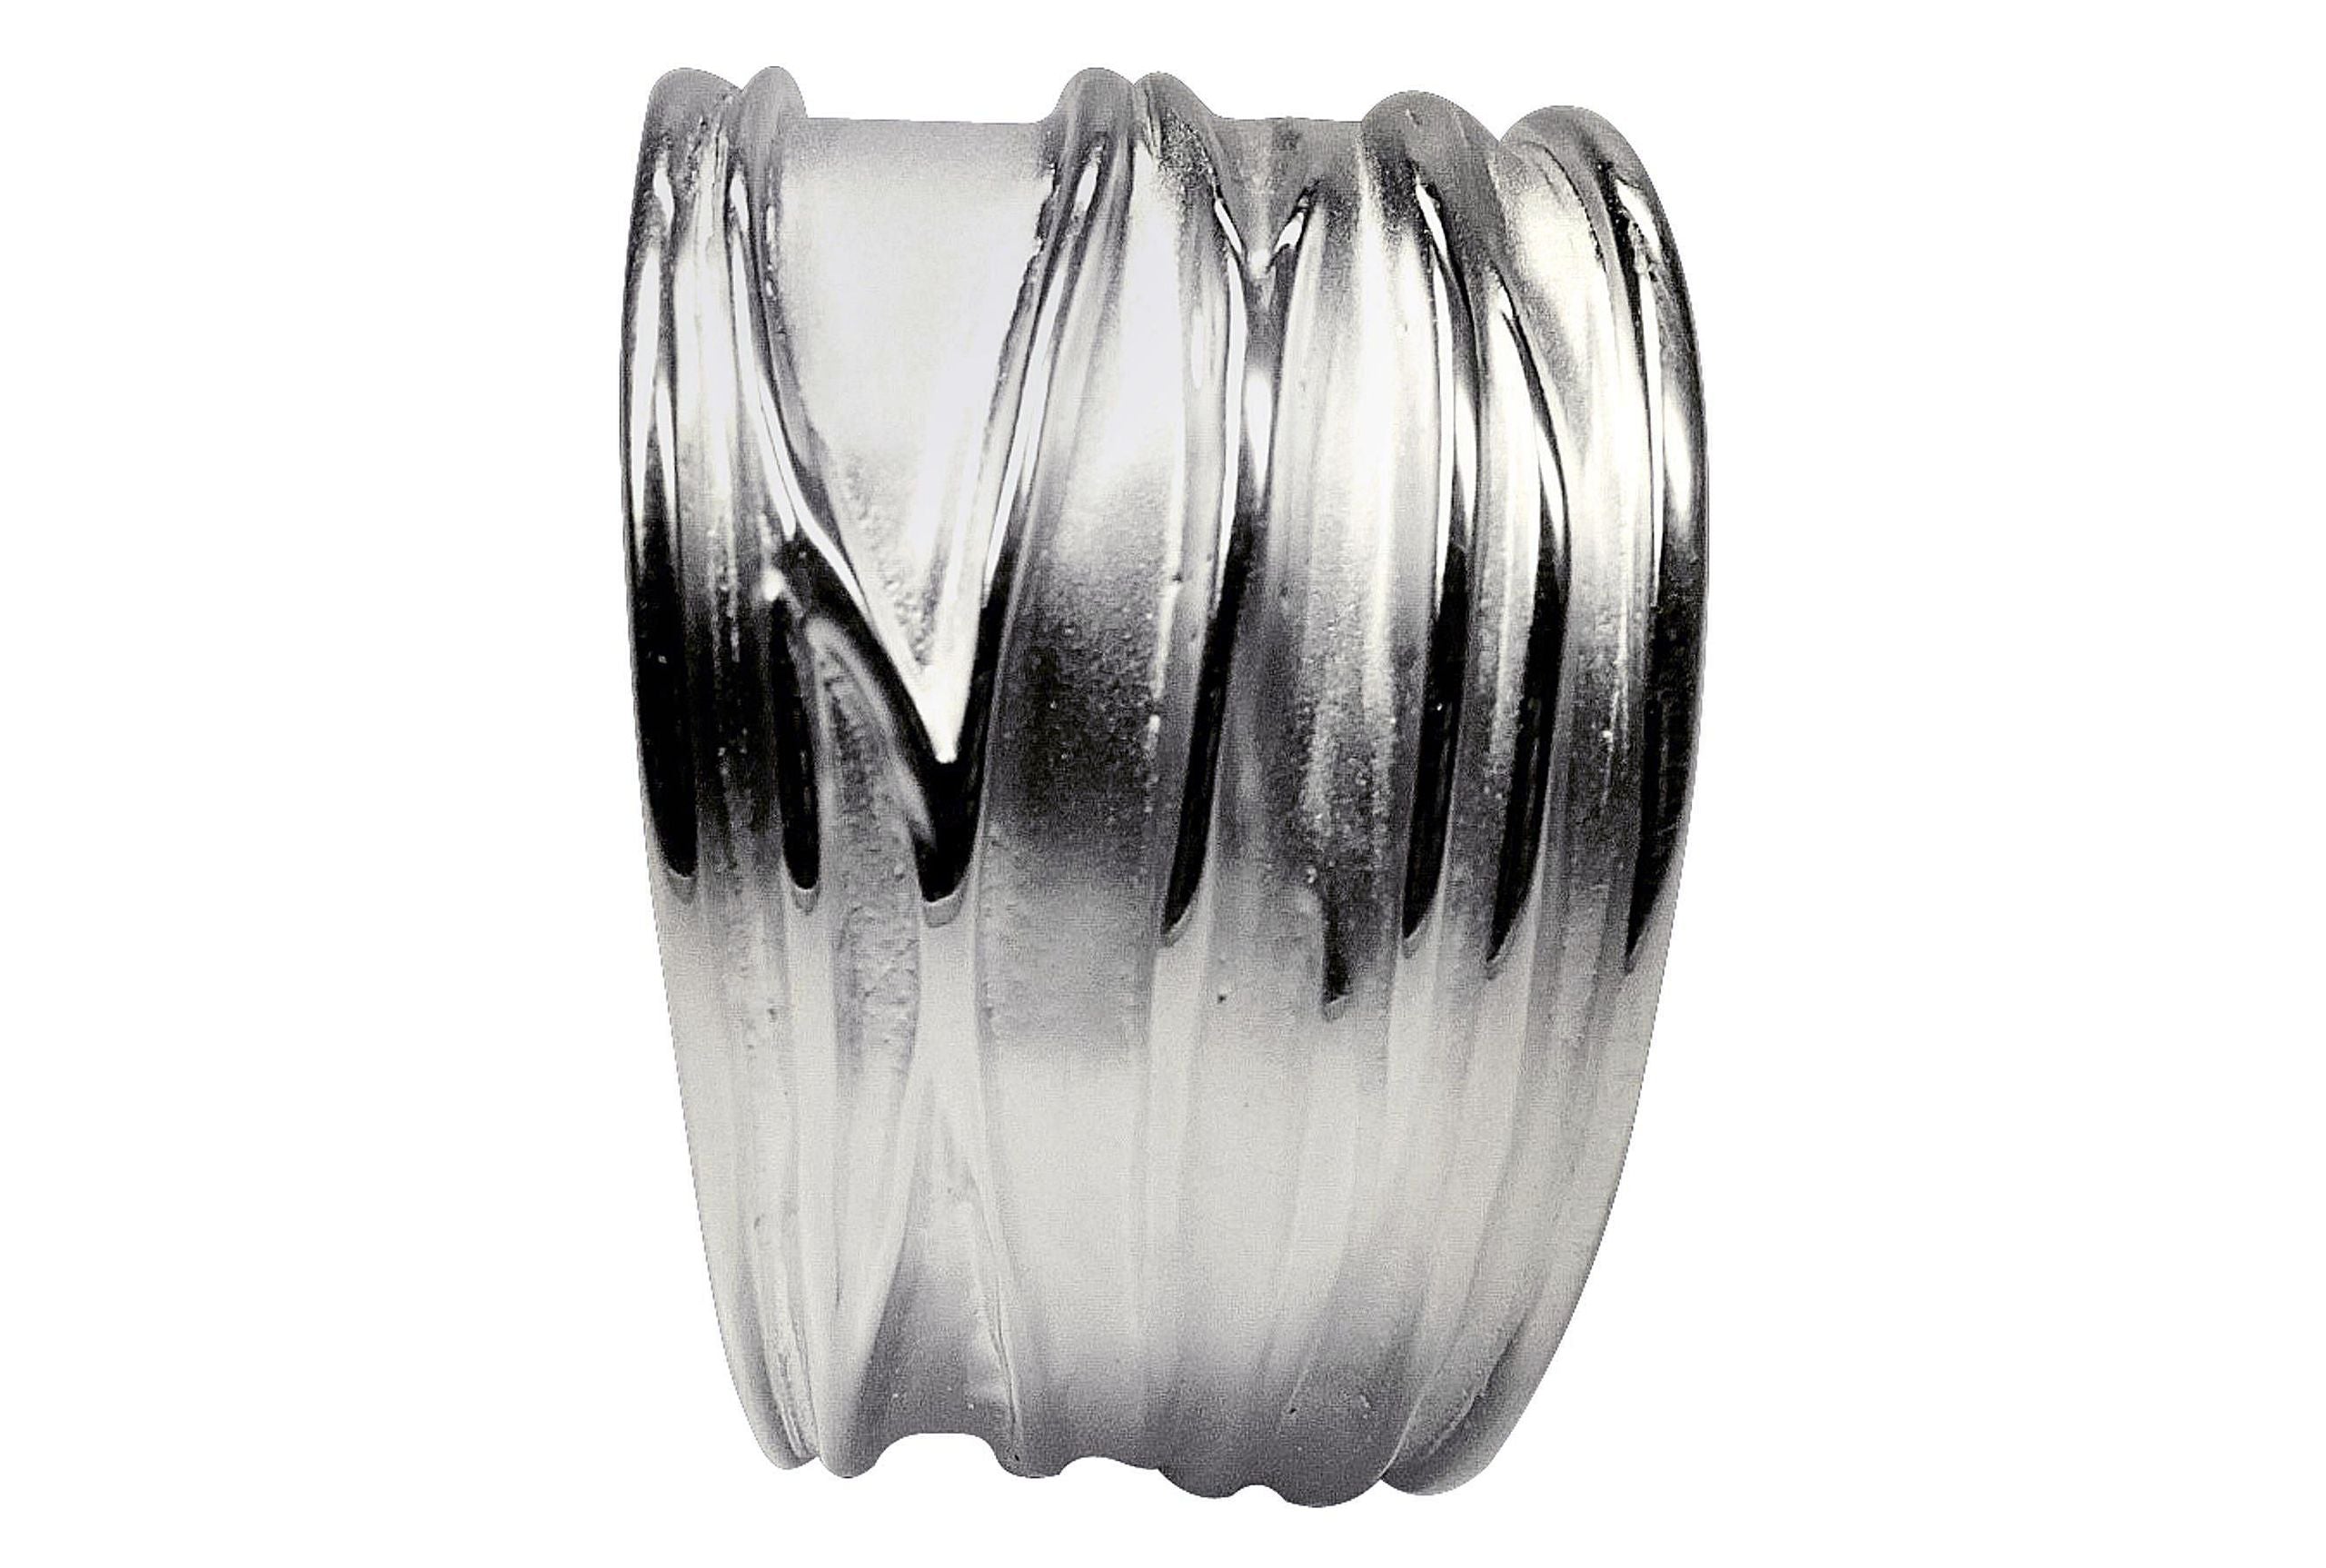 Ein Silberring für Damen mit einer gefalteten Wellenstruktur als Oberfläche, wobei sich die Ringschiene nach unten hin verjüngt.